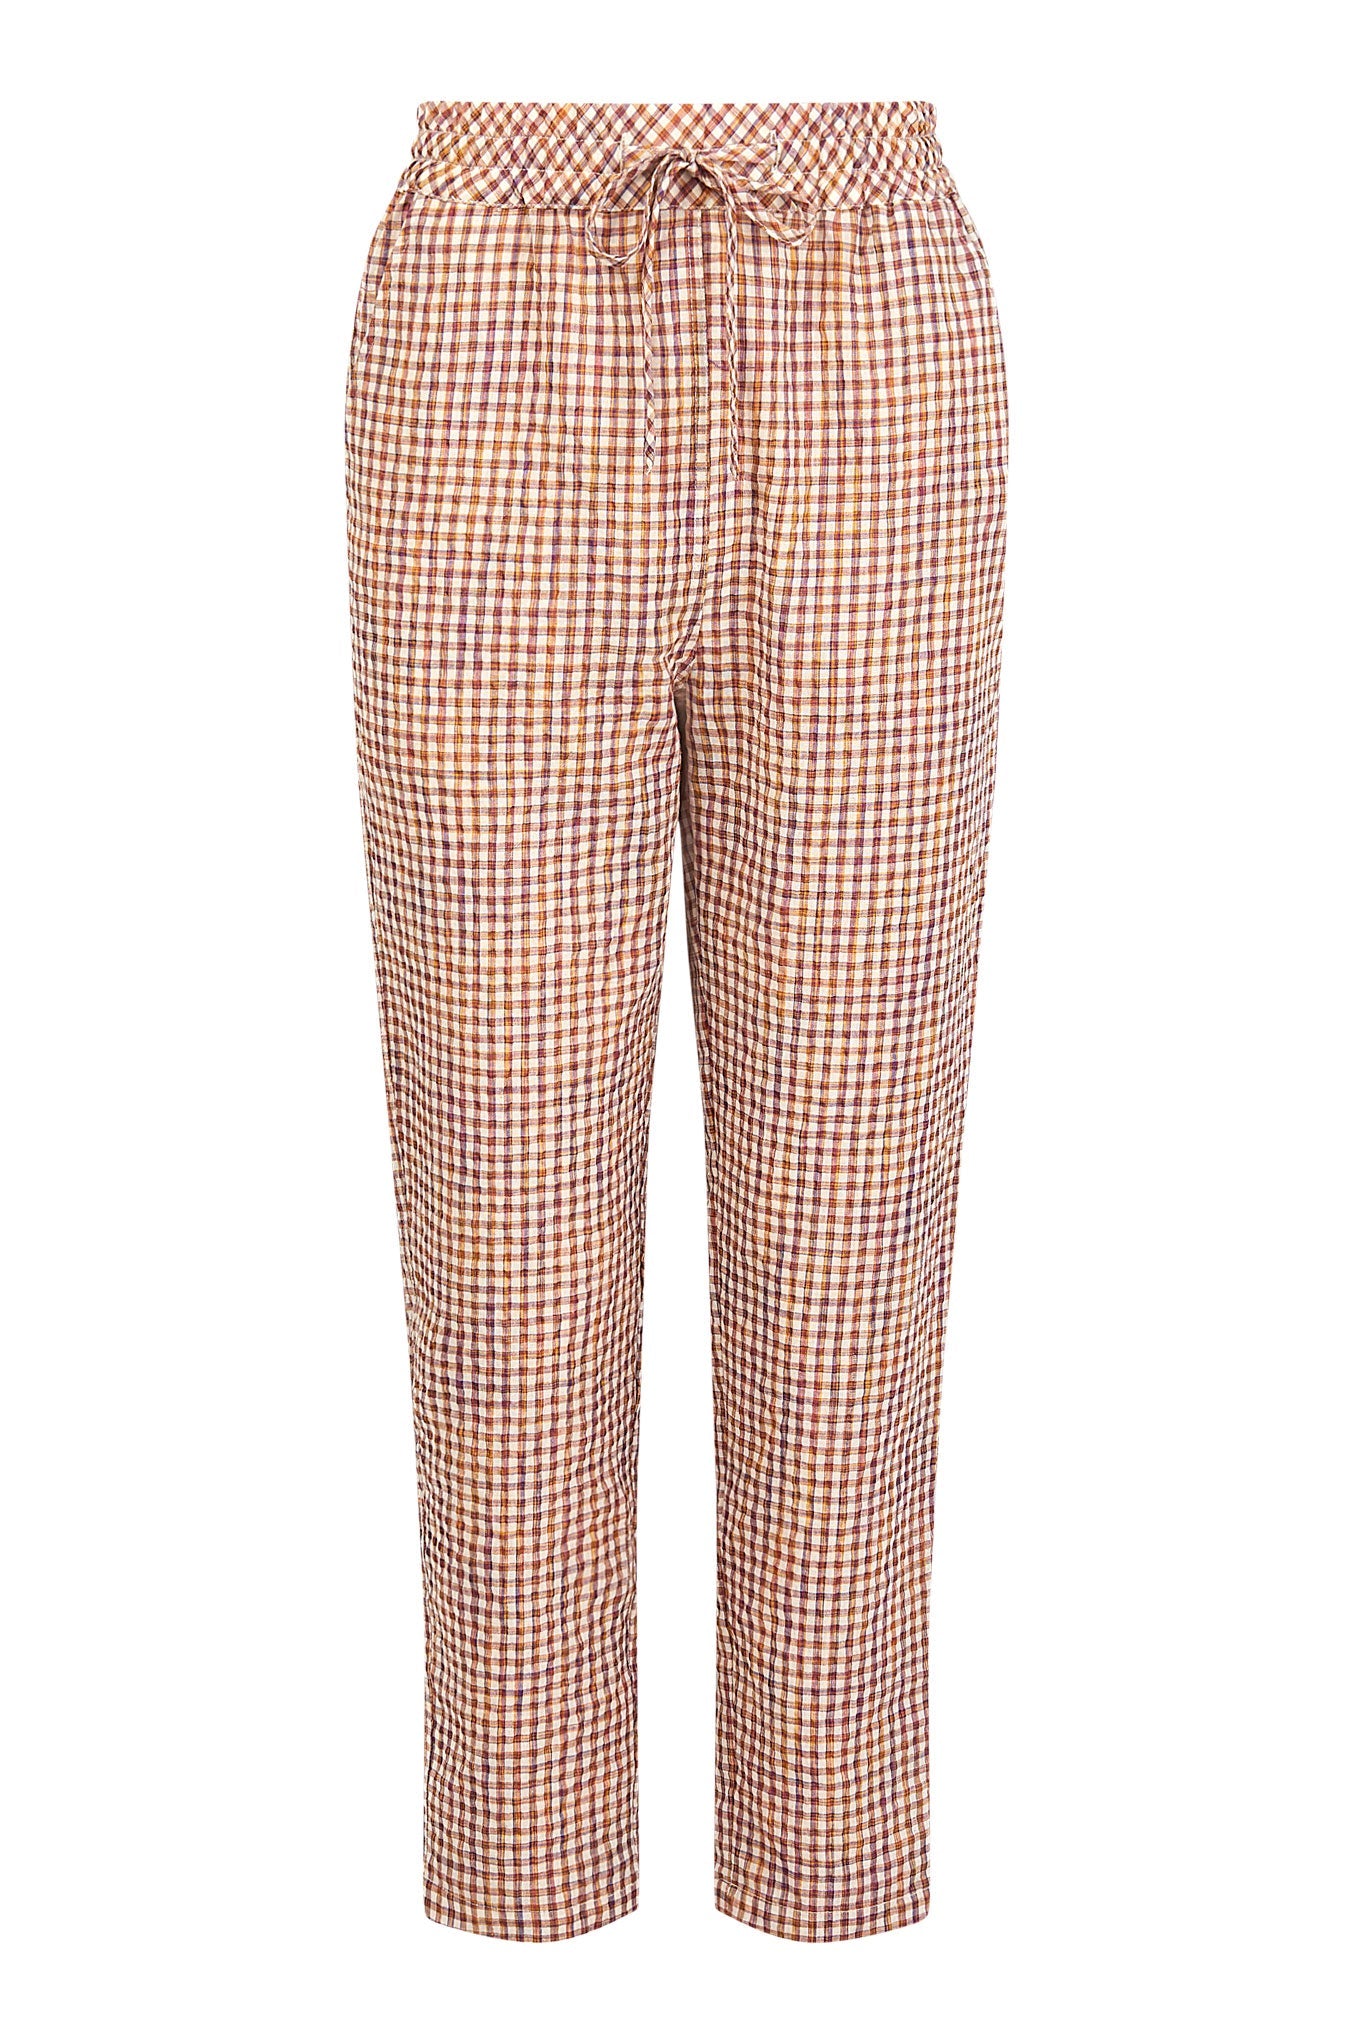 Pantalon marron clair à carreaux RAMA en coton biologique de Komodo